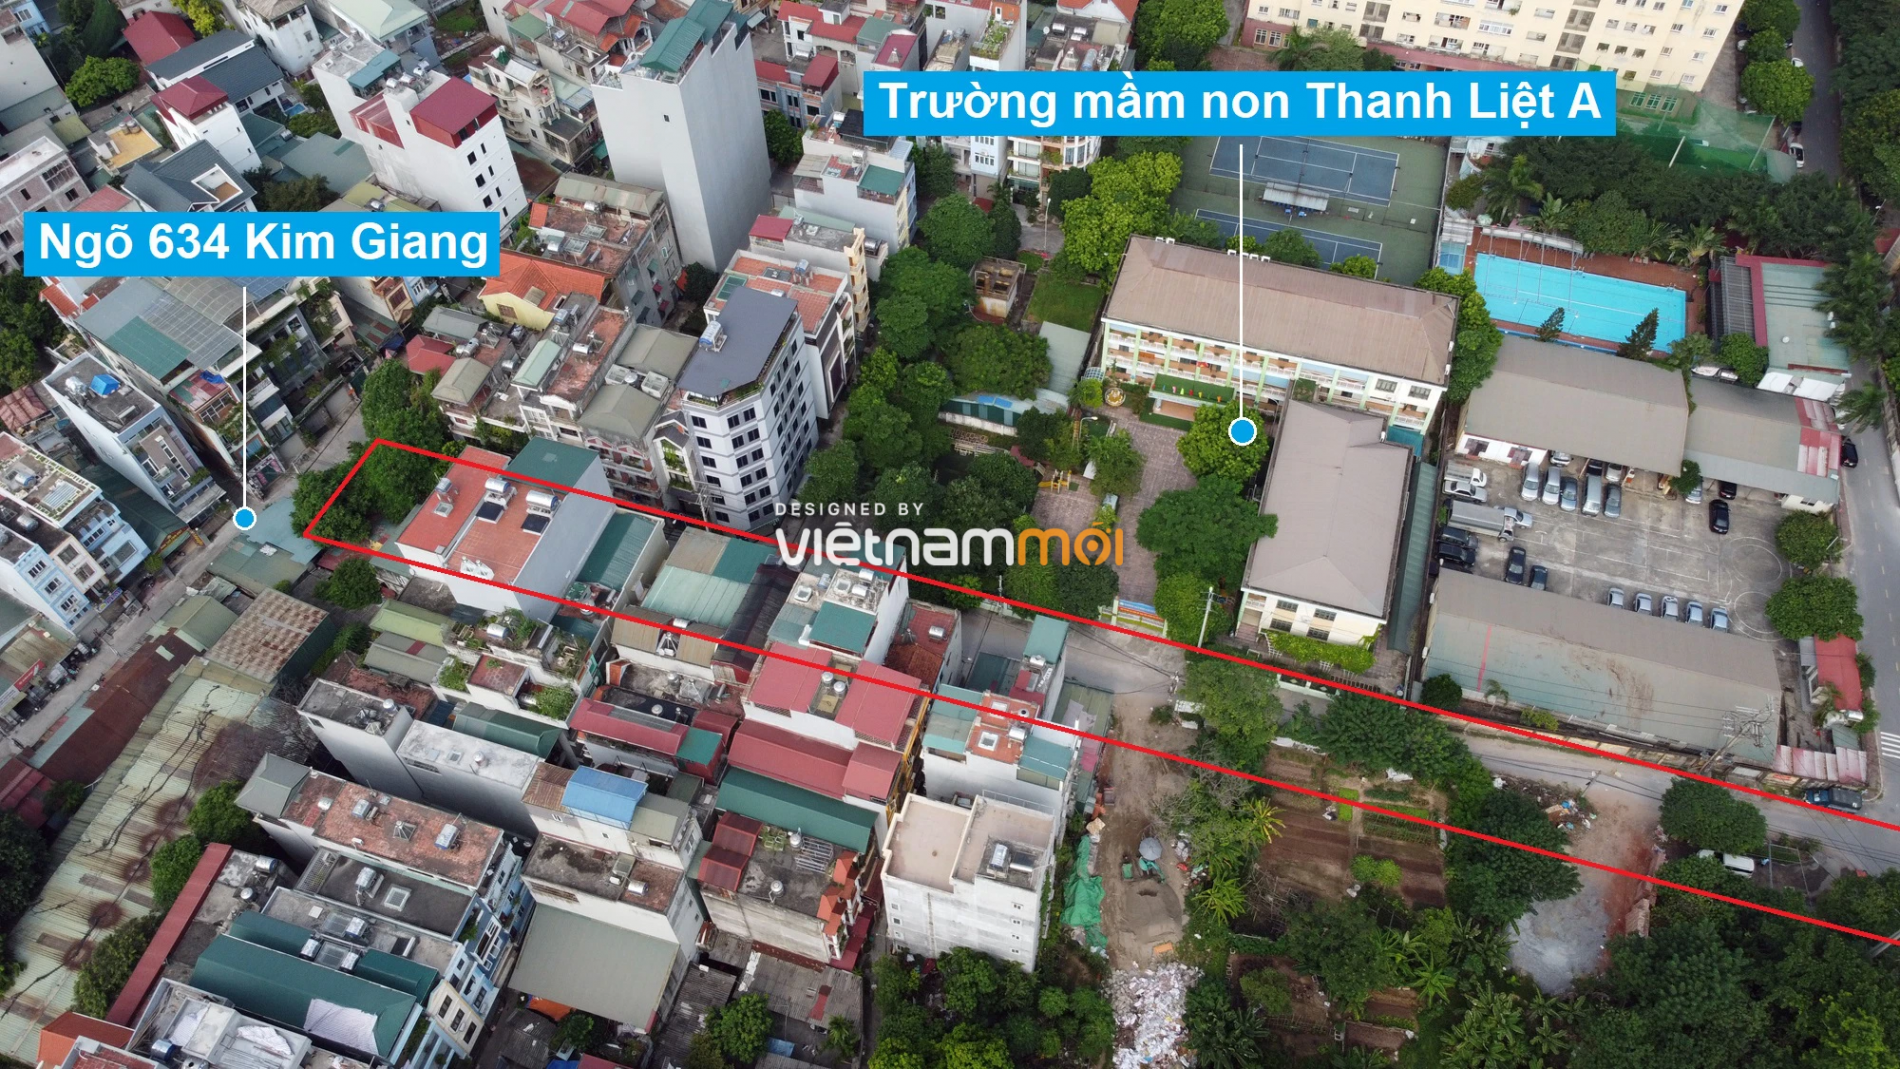 Những khu đất sắp thu hồi để mở đường ở xã Thanh Liệt, Thanh Trì, Hà Nội (phần 4) - Ảnh 8.